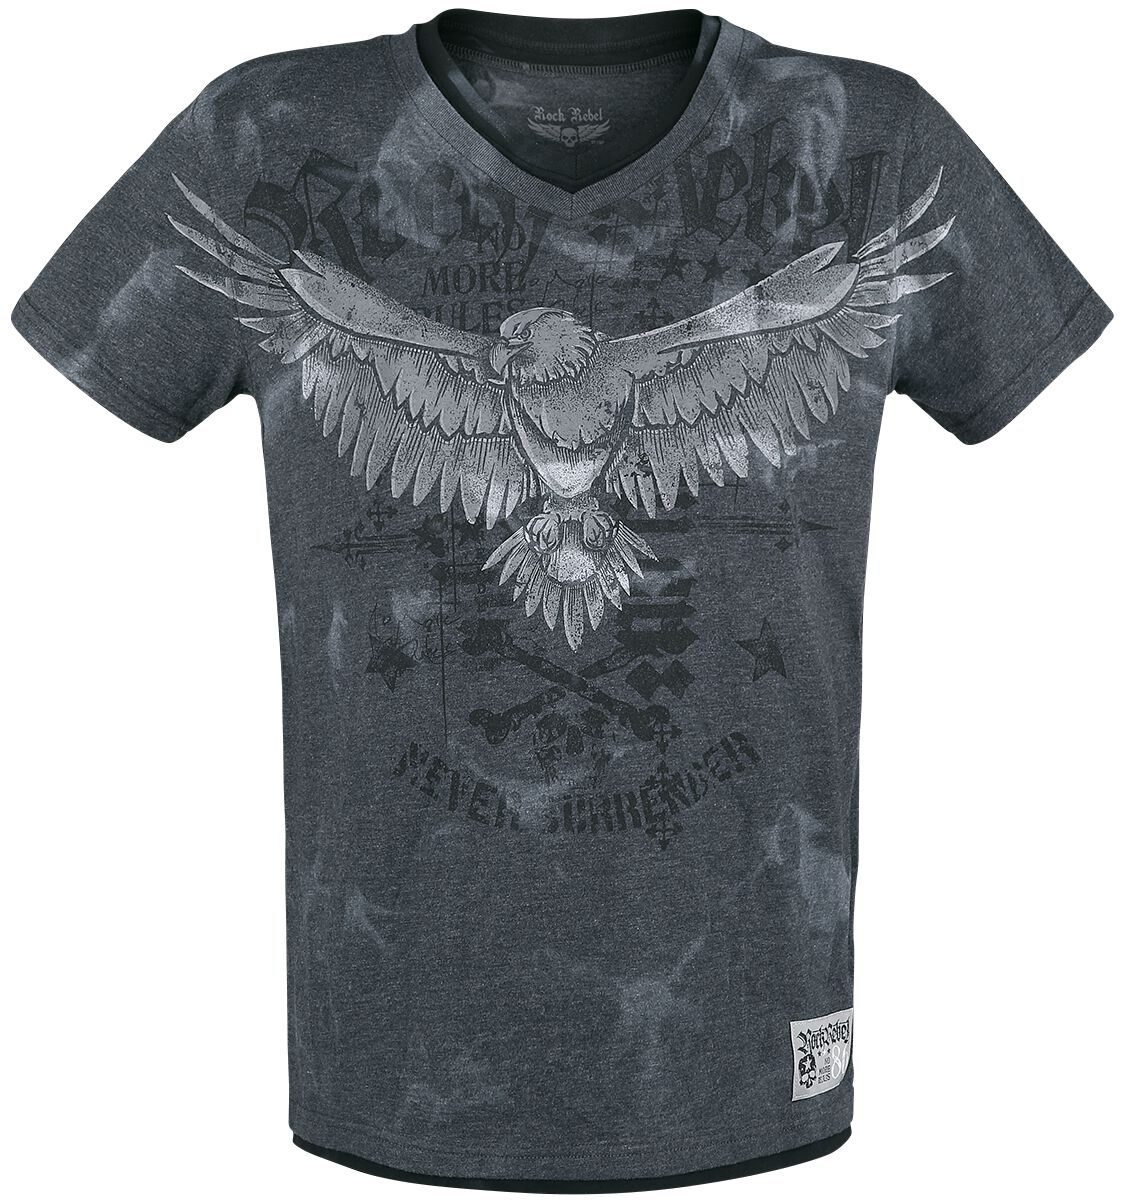 Rock Rebel by EMP - Rock T-Shirt - T-Shirt mit Print und V-Ausschnitt - S bis XXL - für Männer - Größe XXL - grau